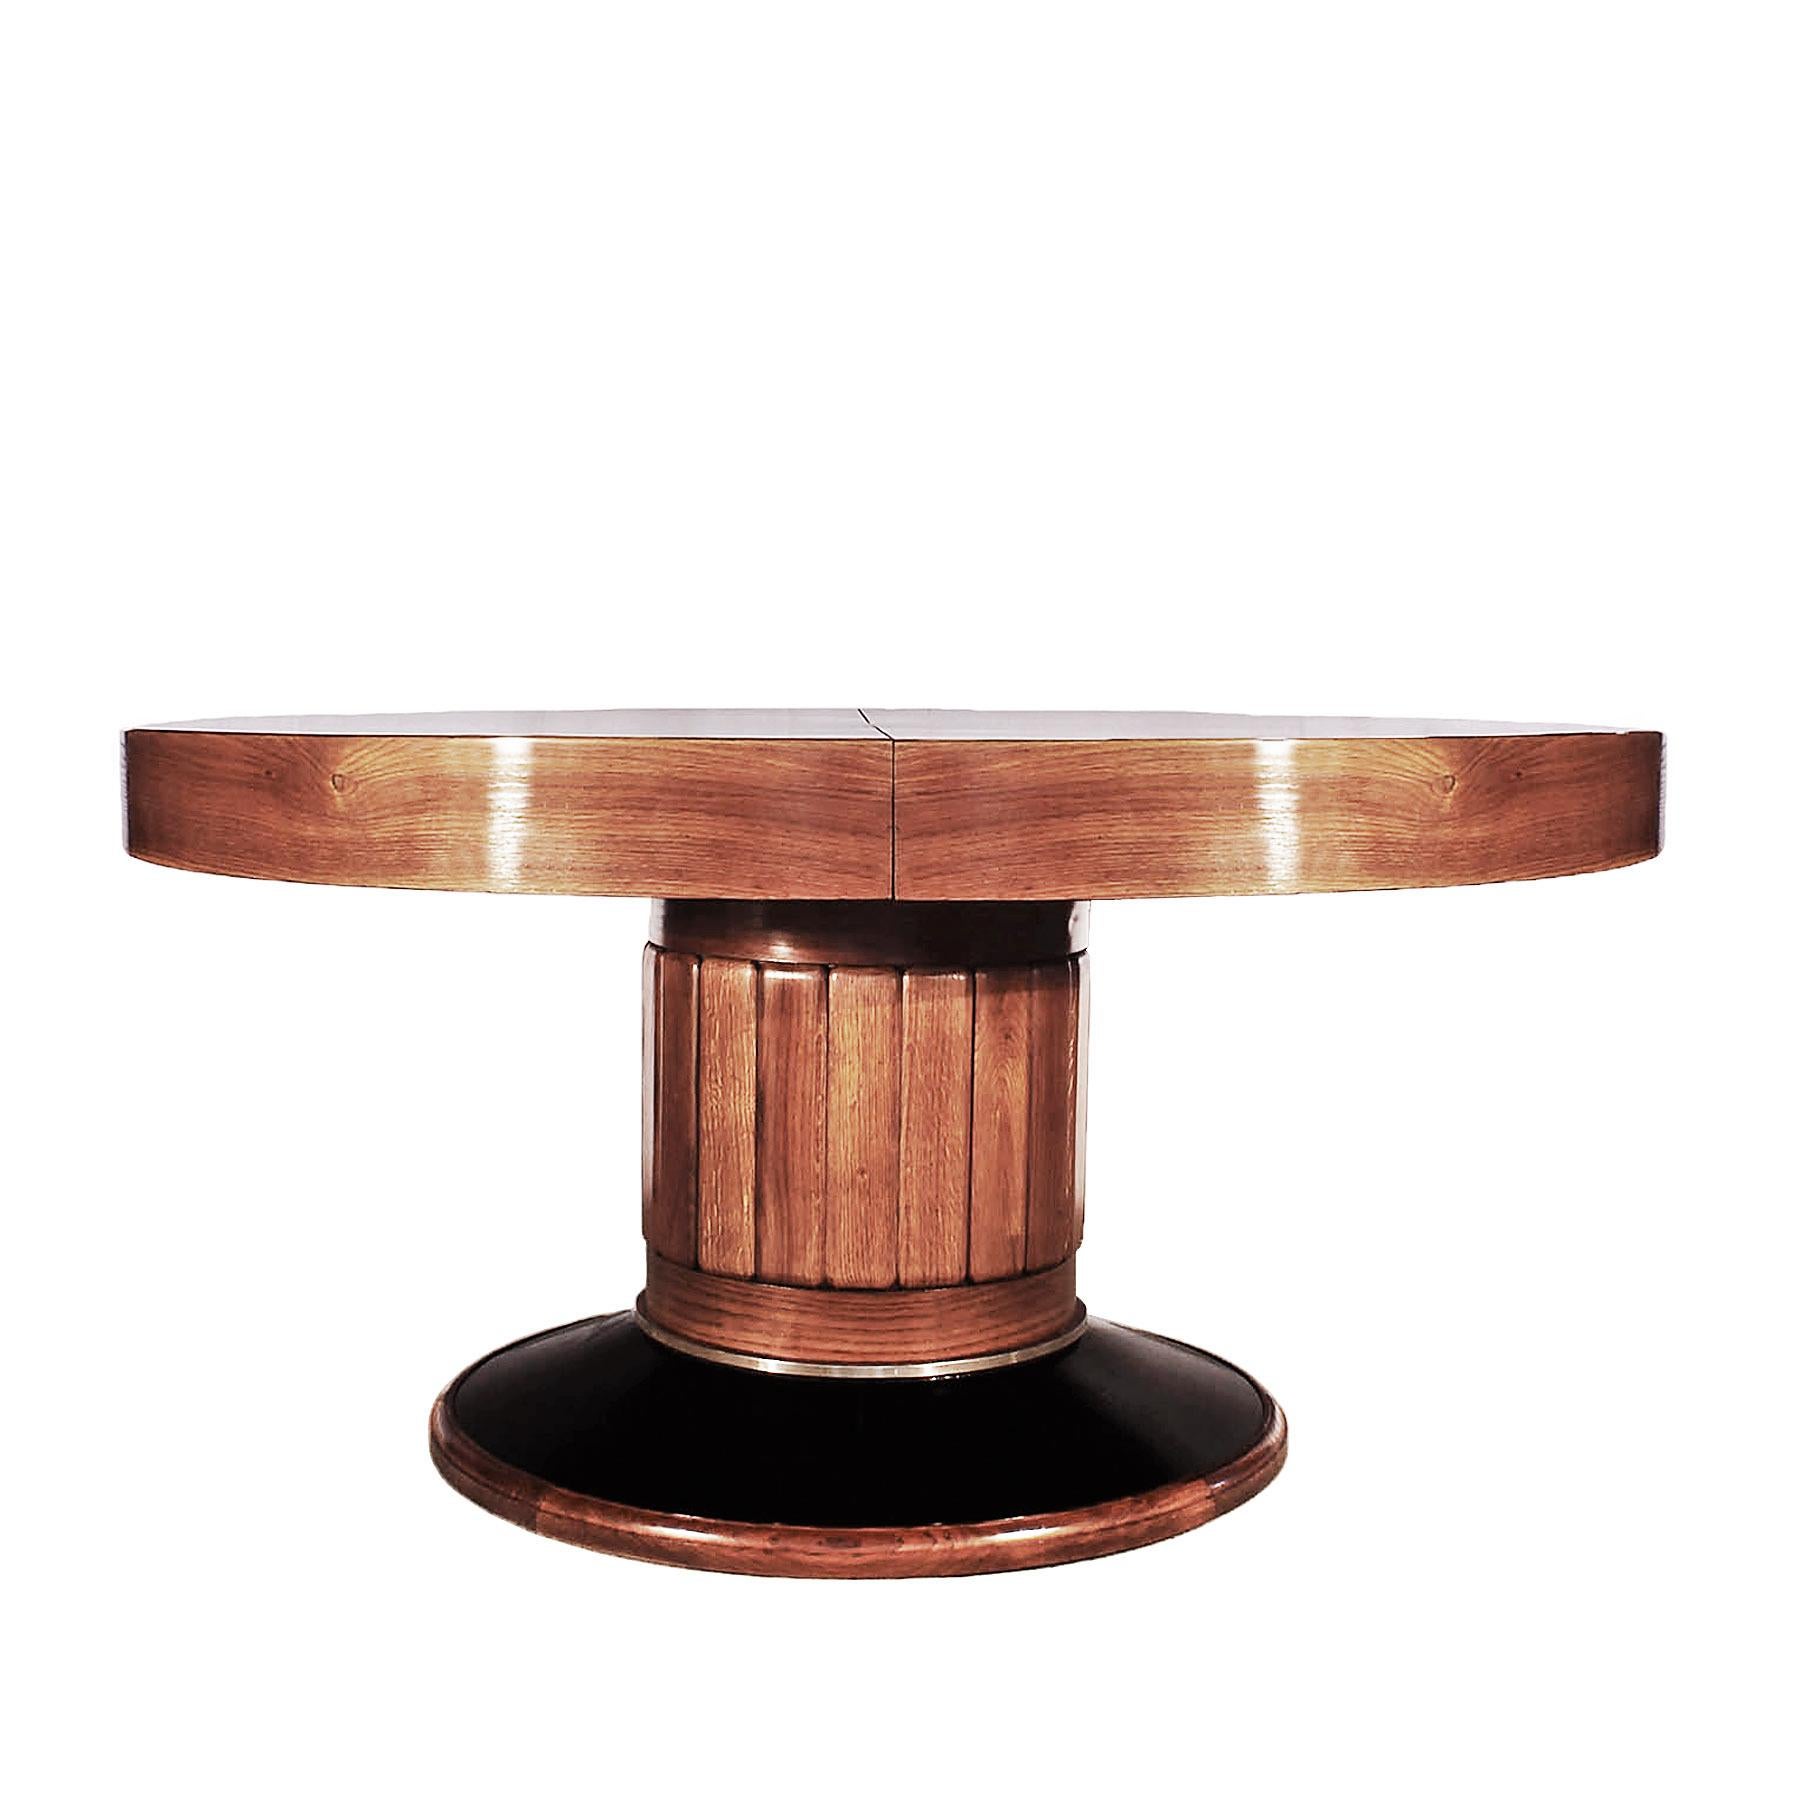 Bigli Art Deco runder Tisch, Eiche massiv mit Eichenfurniereinlegearbeiten, Gestell aus Eichenholz mit schwarz gebeiztem Eichenfurnierfuß mit vernickeltem Messingring, französisch poliert. Auf Anfrage können auch Blätter mit einer Breite von bis zu